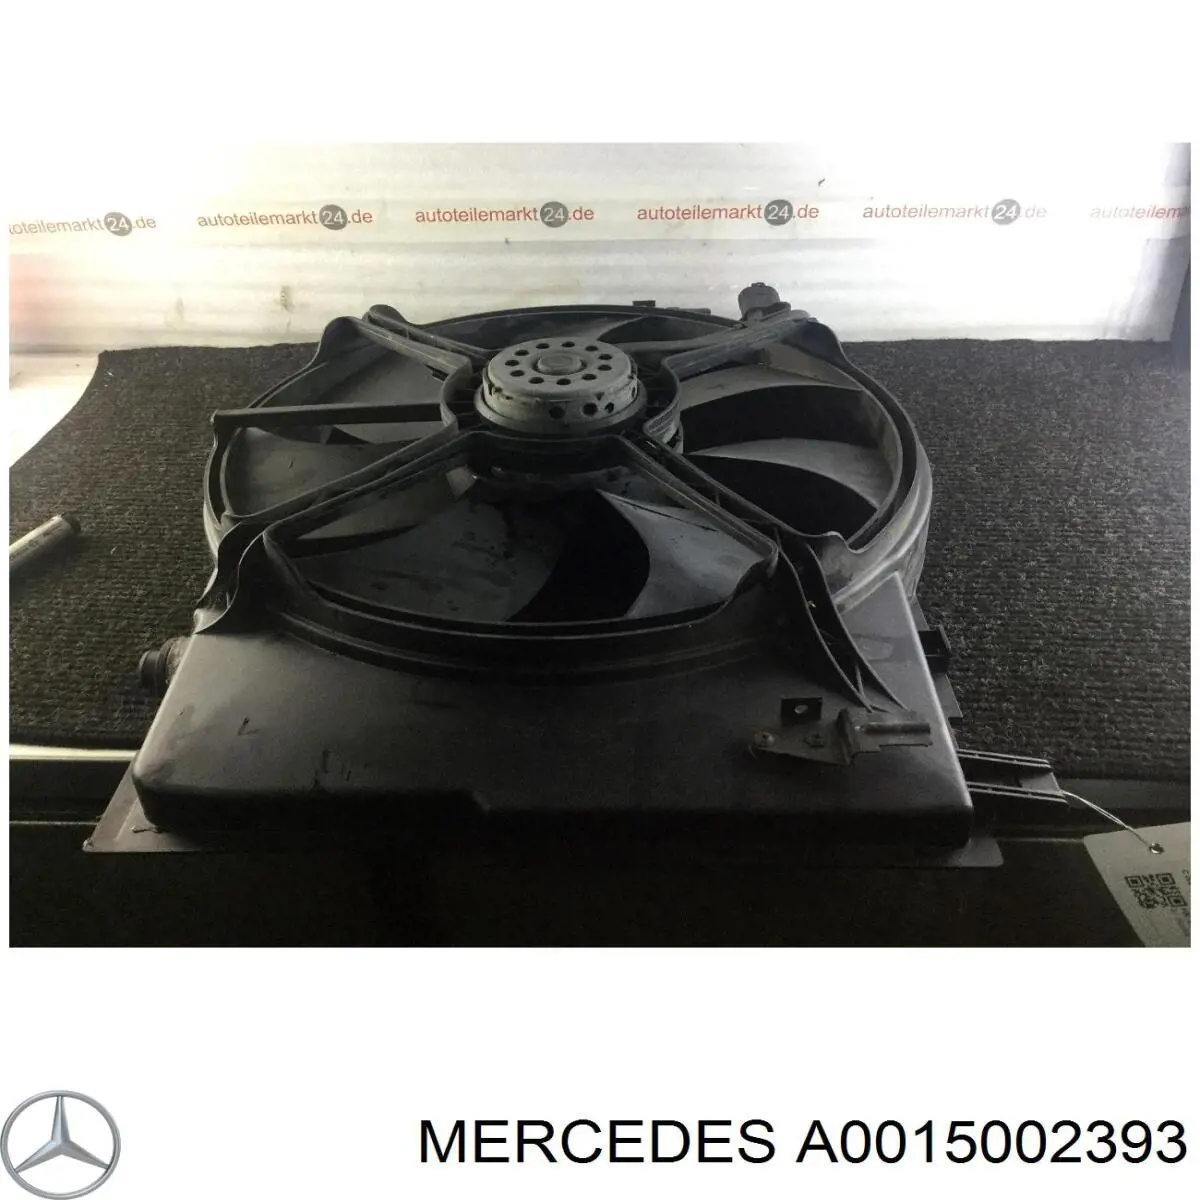 A0015002393 Mercedes difusor de radiador, ventilador de refrigeración, condensador del aire acondicionado, completo con motor y rodete